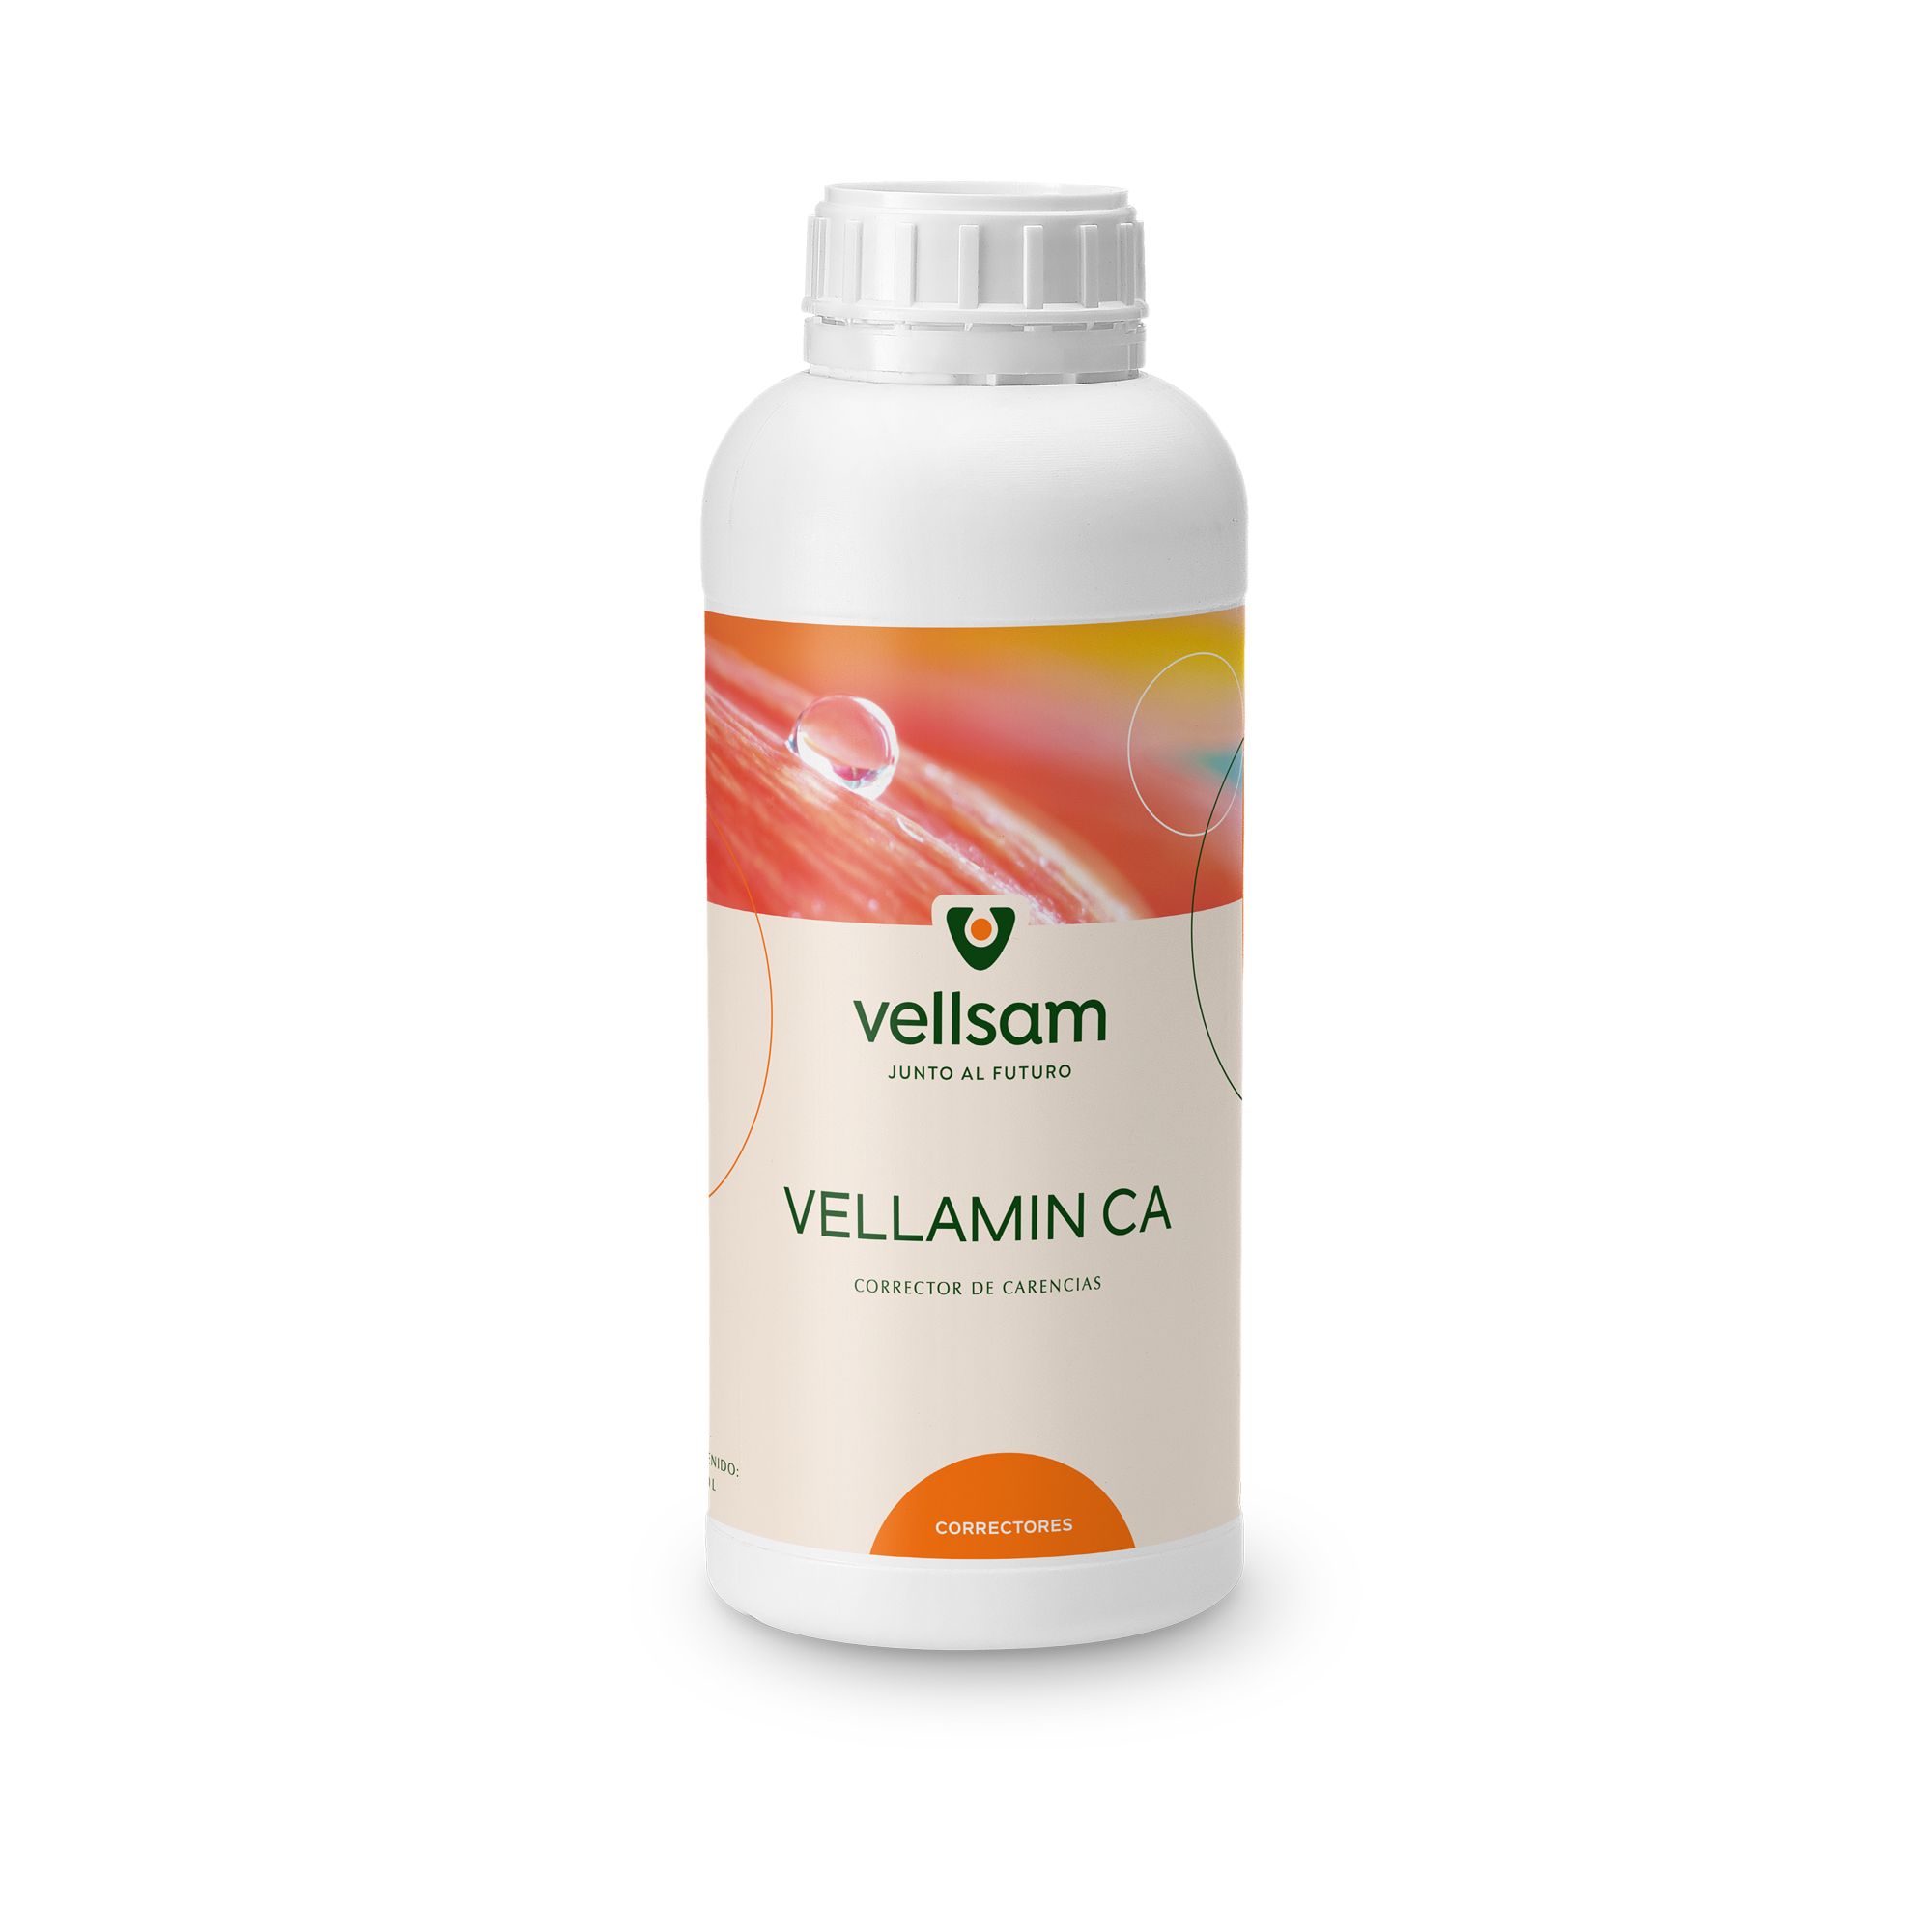 Vellamin Ca - Производ на бази аминокиселина и калцијума намење за фолијарну примену.